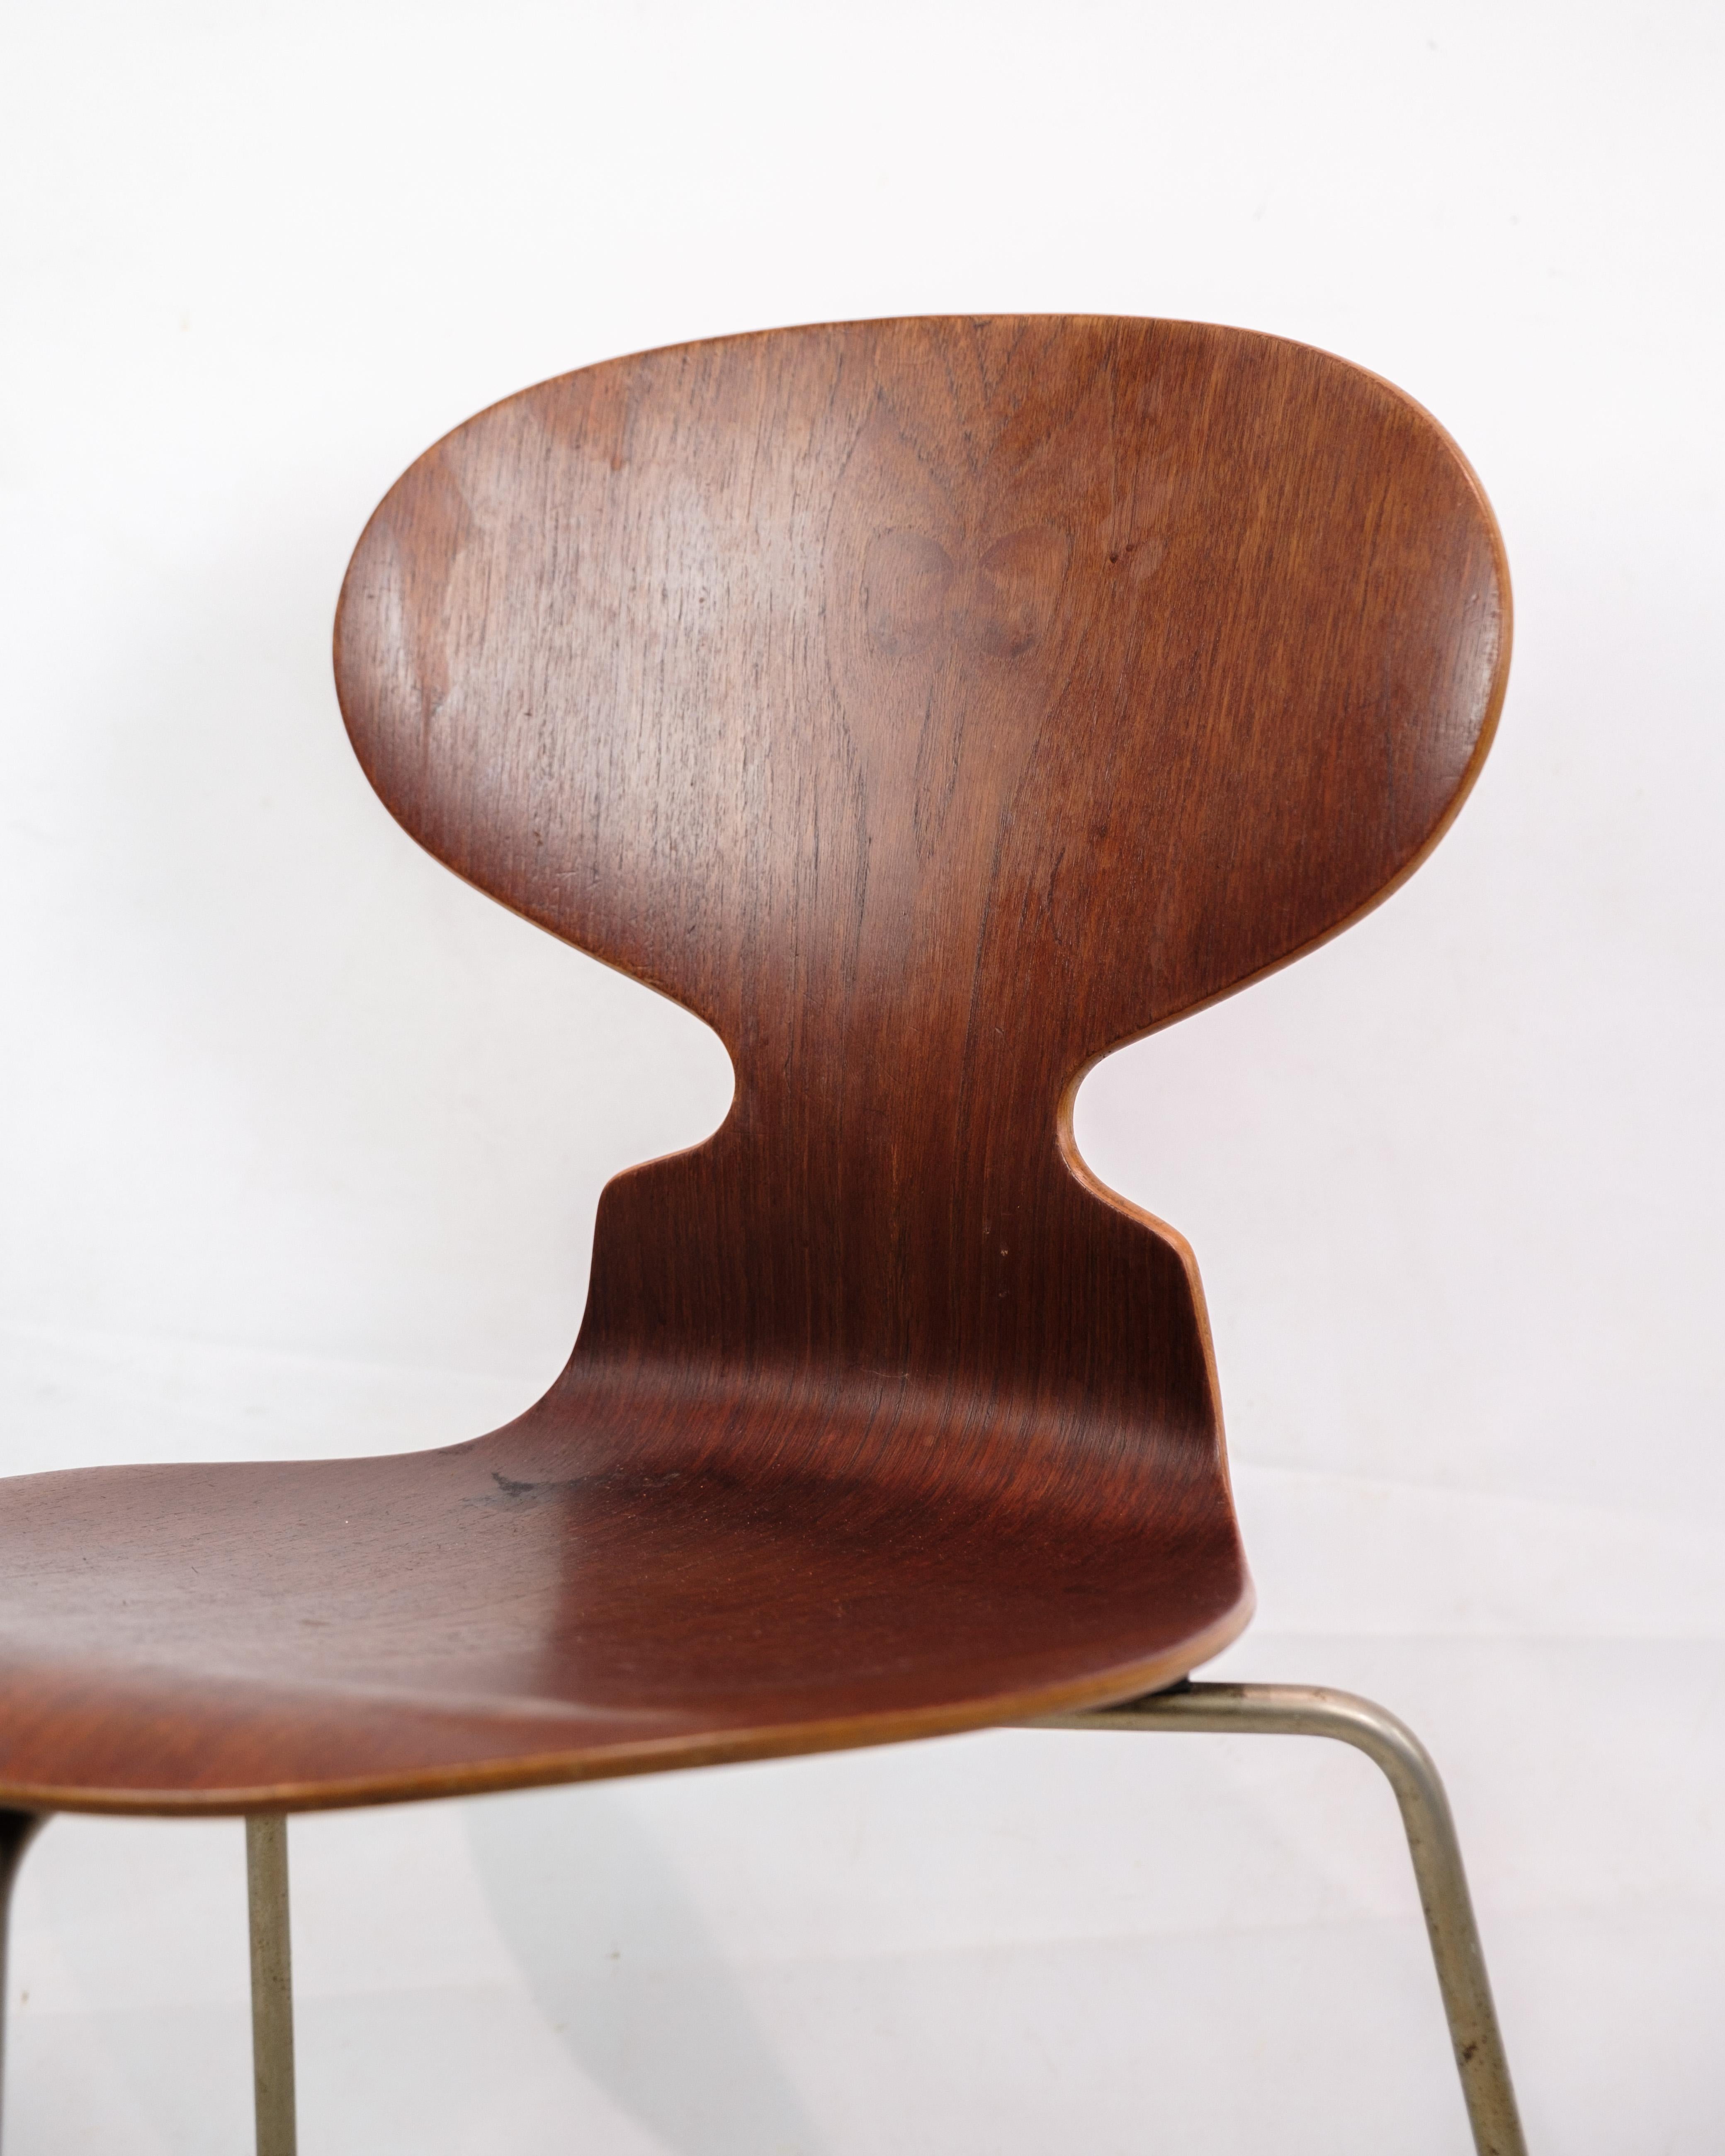 Cette chaise est connue sous le nom de Model 3100 Icone, conçue par l'emblématique architecte et designer danois Arne Jacobsen pour Fritz Hansen en 1950. La chaise est célèbre pour son assise distinctive de forme organique qui ressemble à la